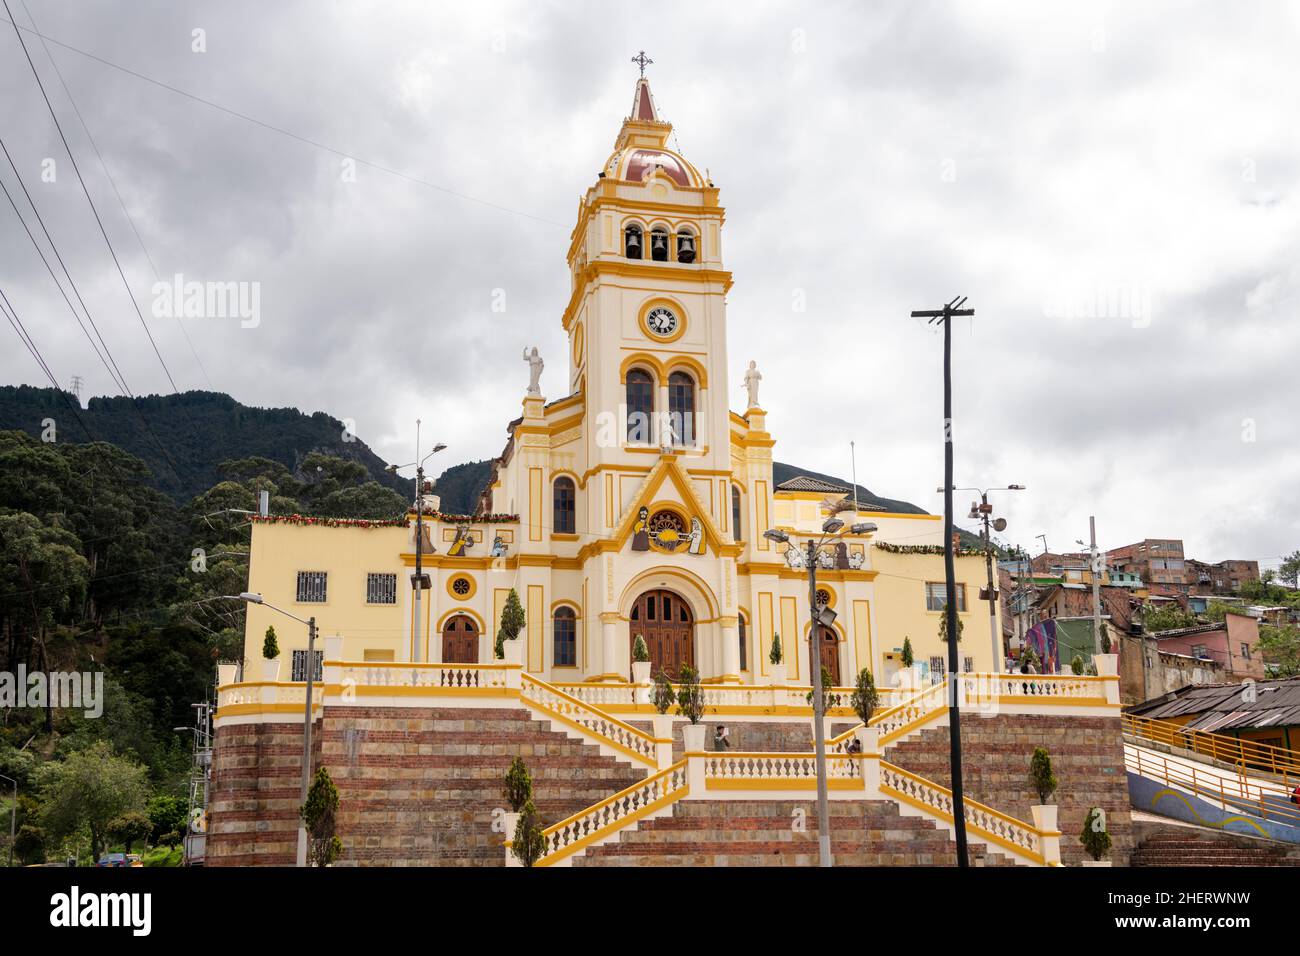 Église Iglesia de Nuestra Señora de Egipto, Bogta, Colombie.Situé en bordure du quartier autrefois célèbre des gangs de Barrio Egipto. Banque D'Images